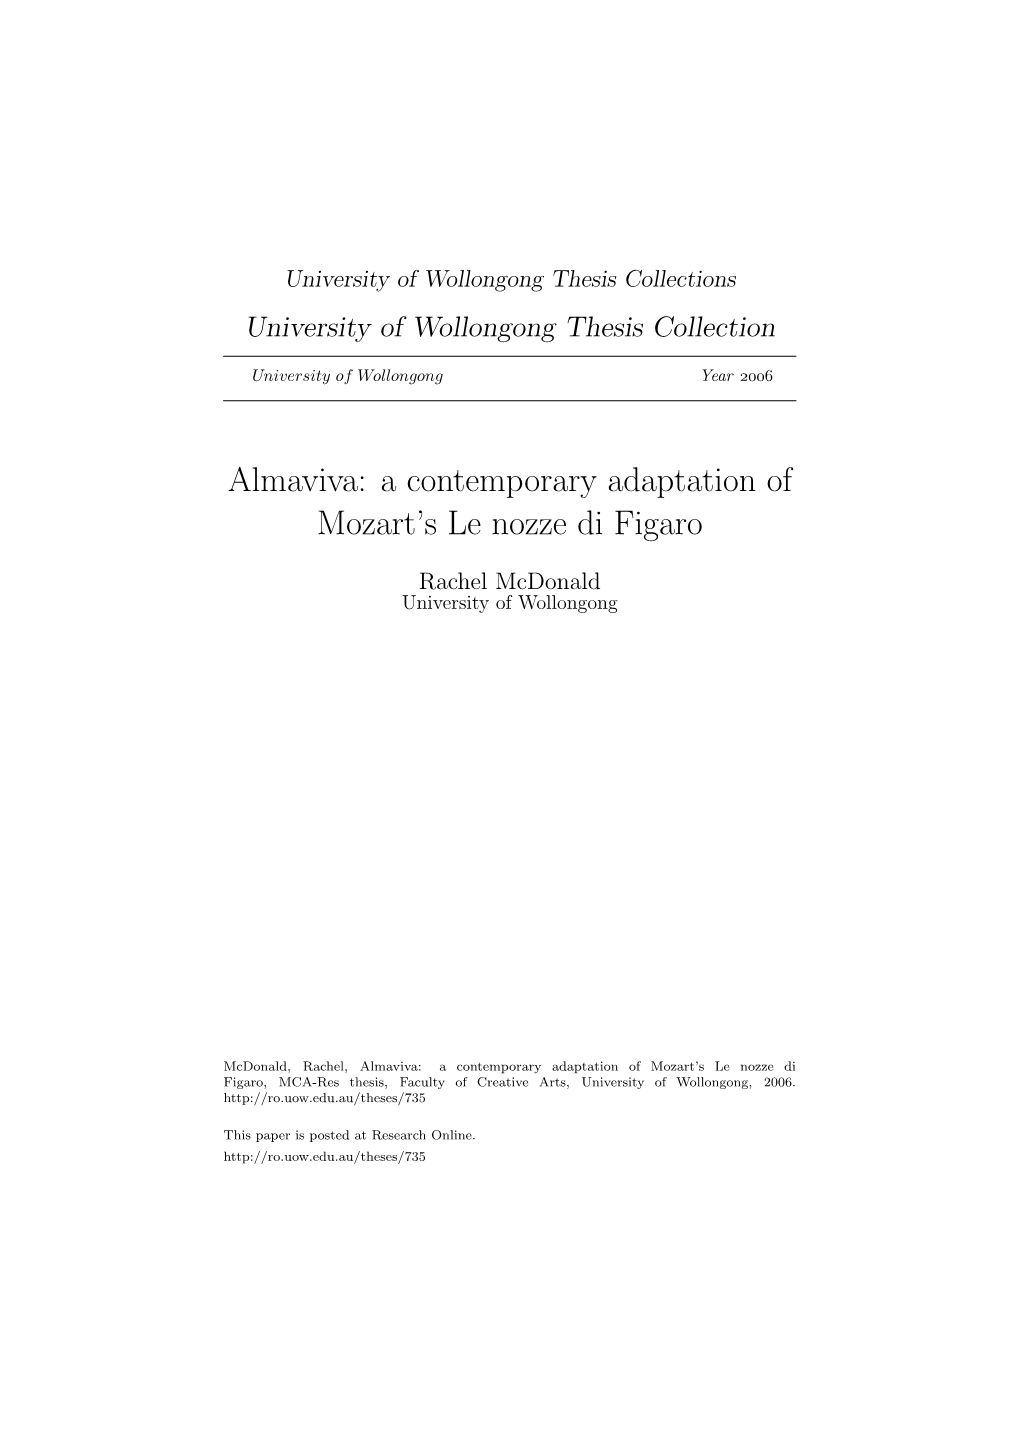 Almaviva: a Contemporary Adaptation of Mozart's Le Nozze Di Figaro